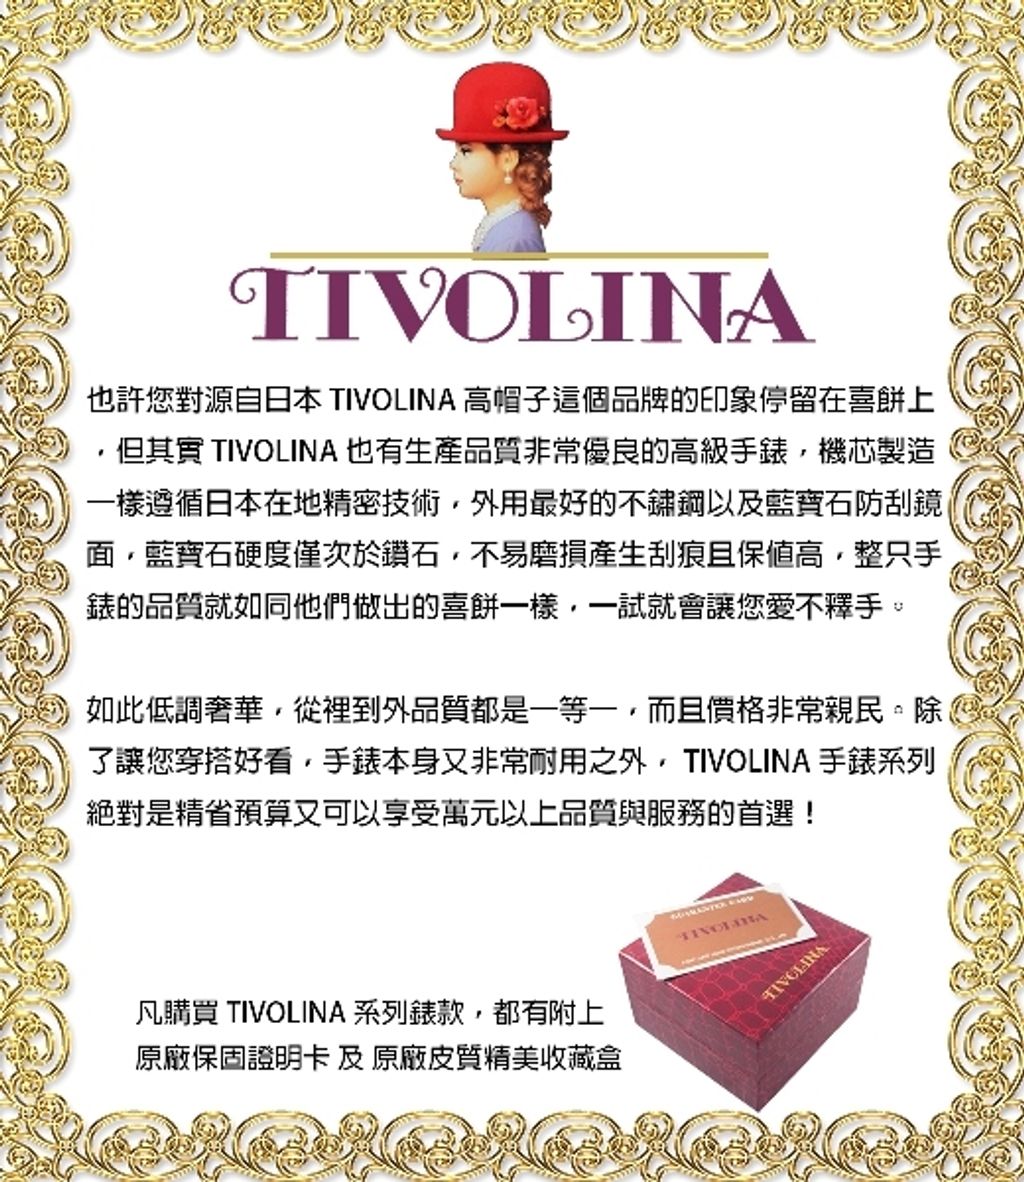 TIVOLINA_words.jpg